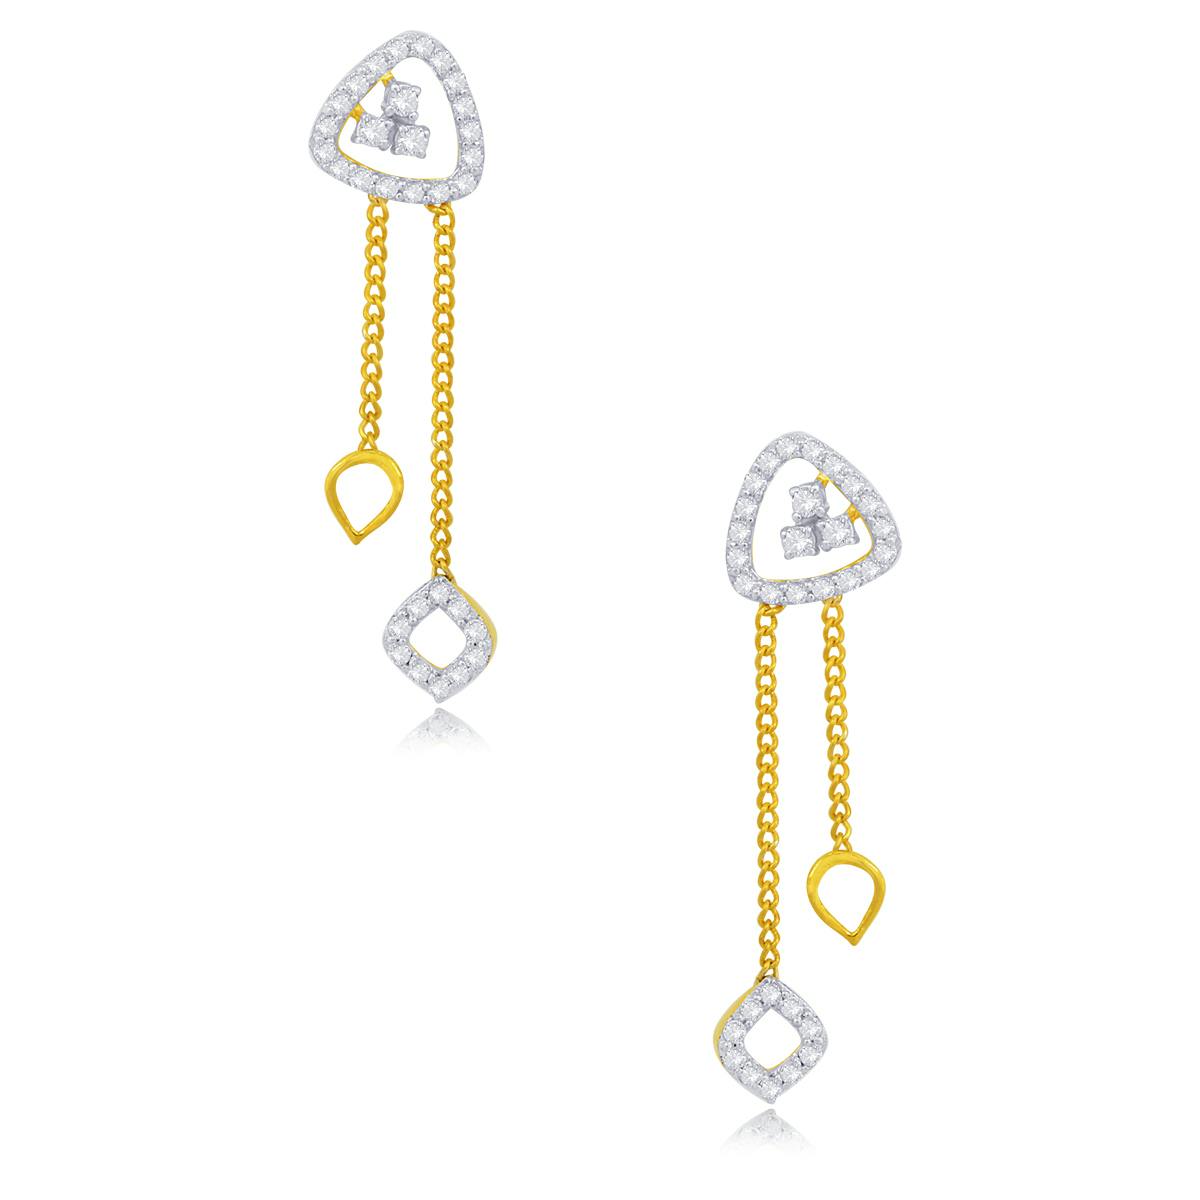 Celestial Splendour diamond earrings